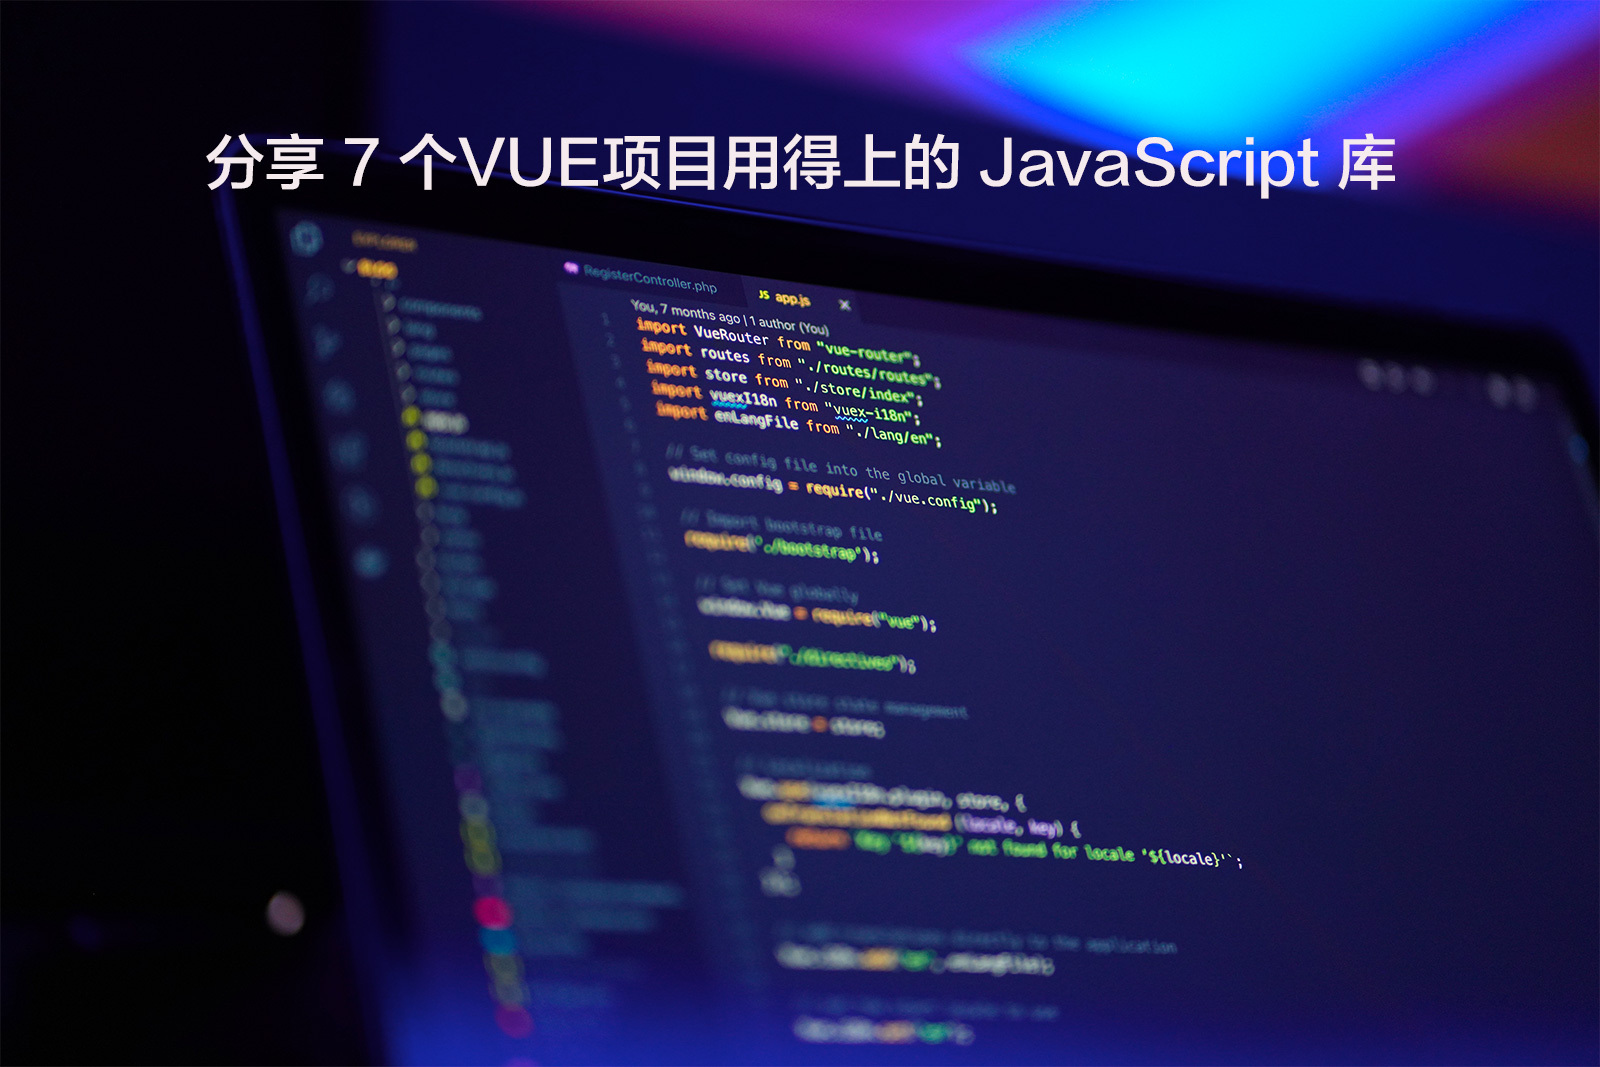 分享 7 个VUE项目用得上的JavaScript库